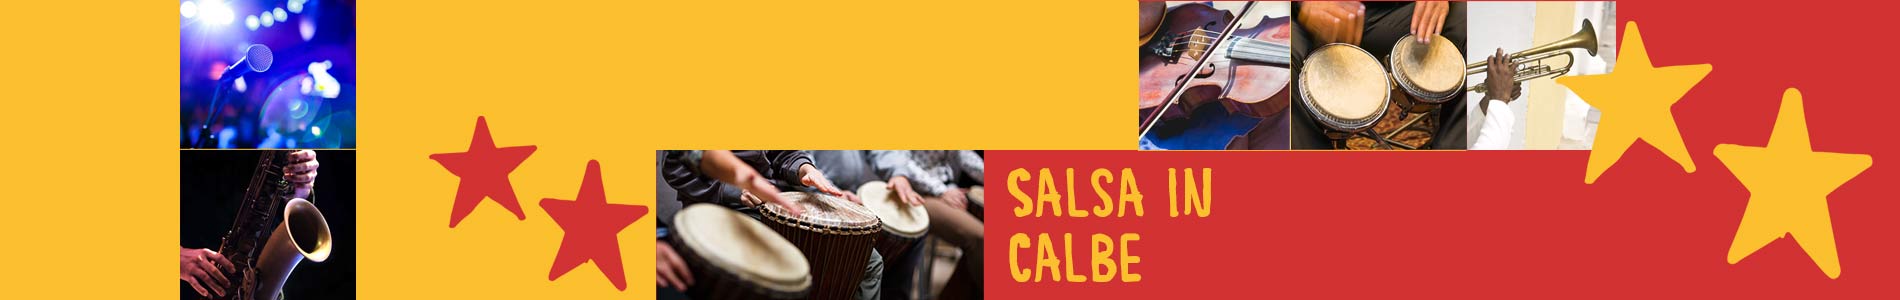 Salsa in Calbe – Salsa lernen und tanzen, Tanzkurse, Partys, Veranstaltungen